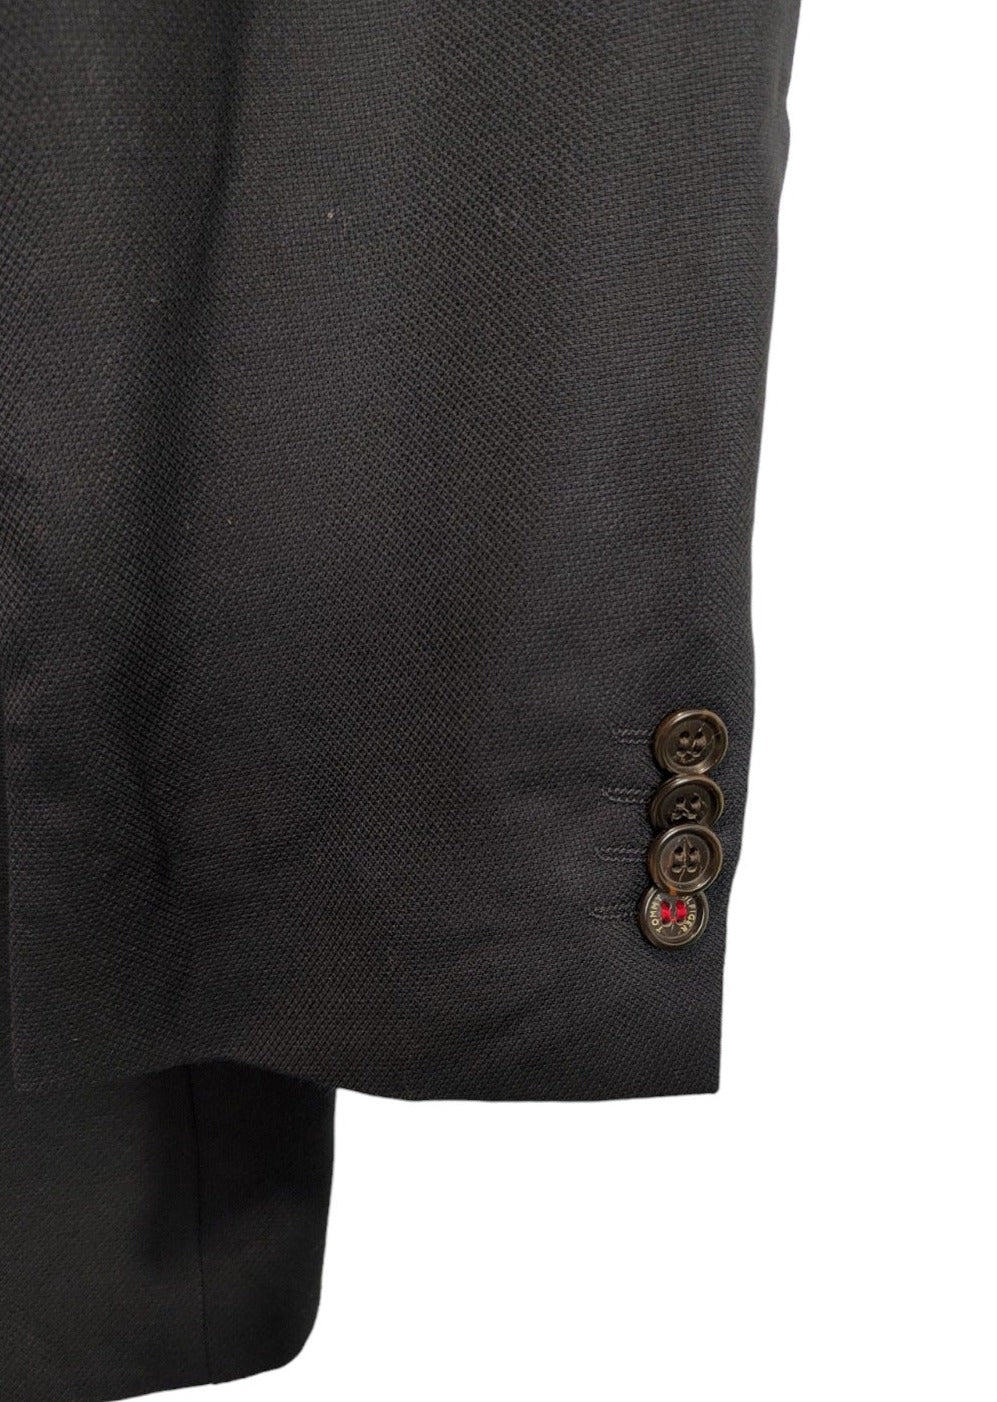 Μάλλινο Ανδρικό Σακάκι TOMMY HILFIGER σε Μαύρο Χρώμα (Large)